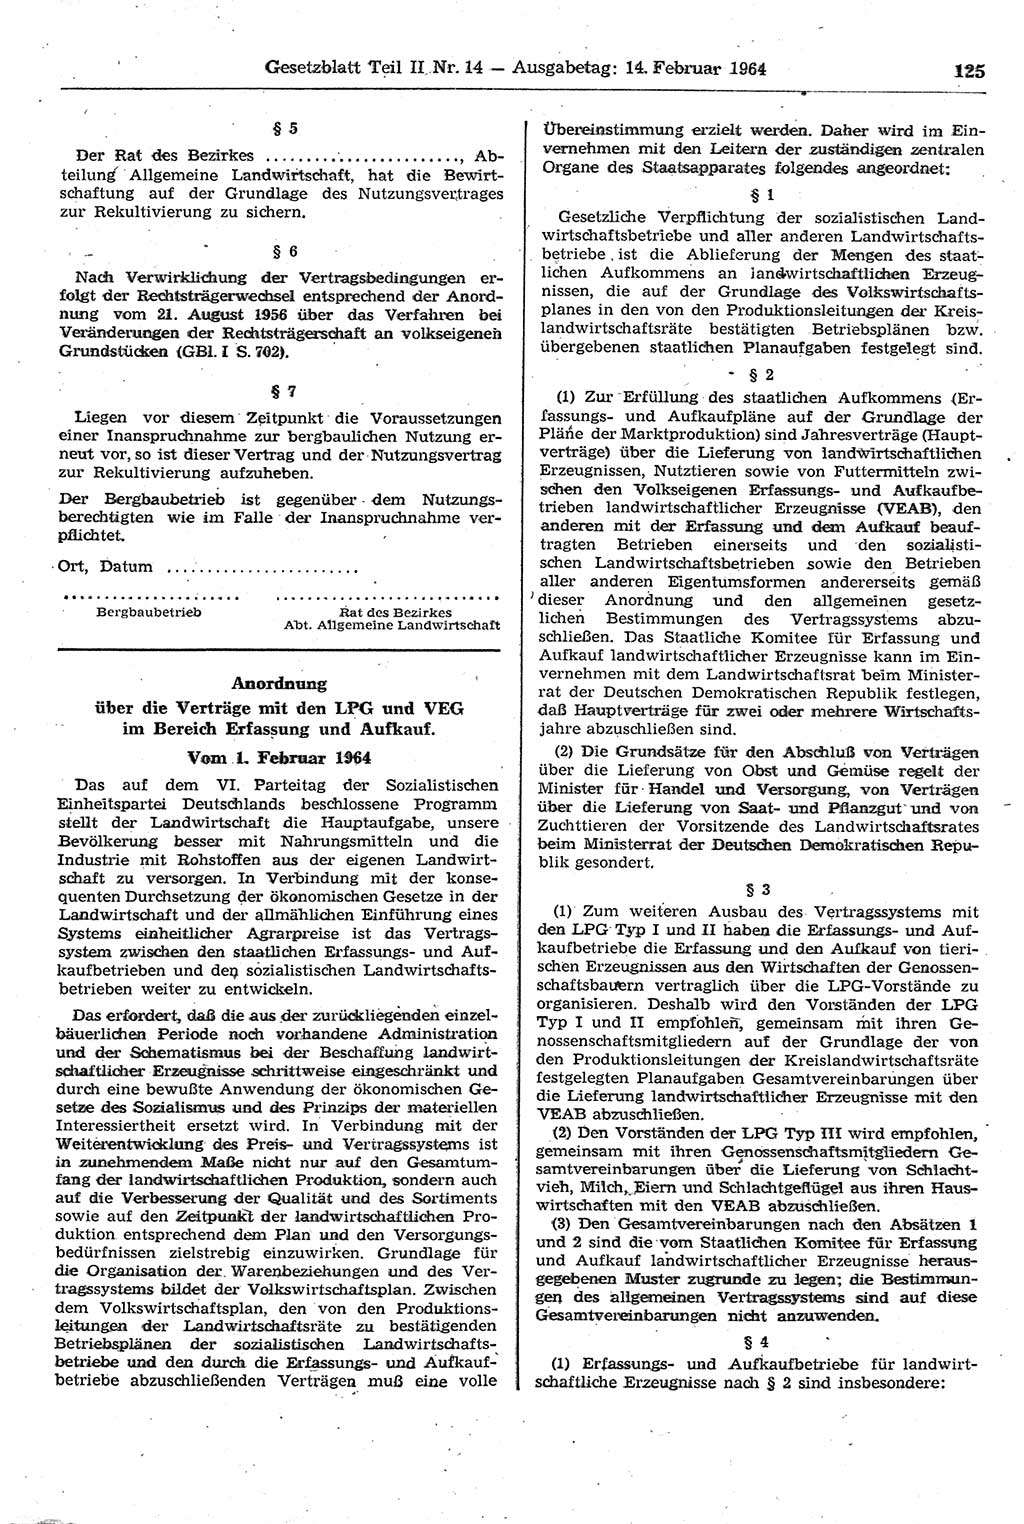 Gesetzblatt (GBl.) der Deutschen Demokratischen Republik (DDR) Teil ⅠⅠ 1964, Seite 125 (GBl. DDR ⅠⅠ 1964, S. 125)